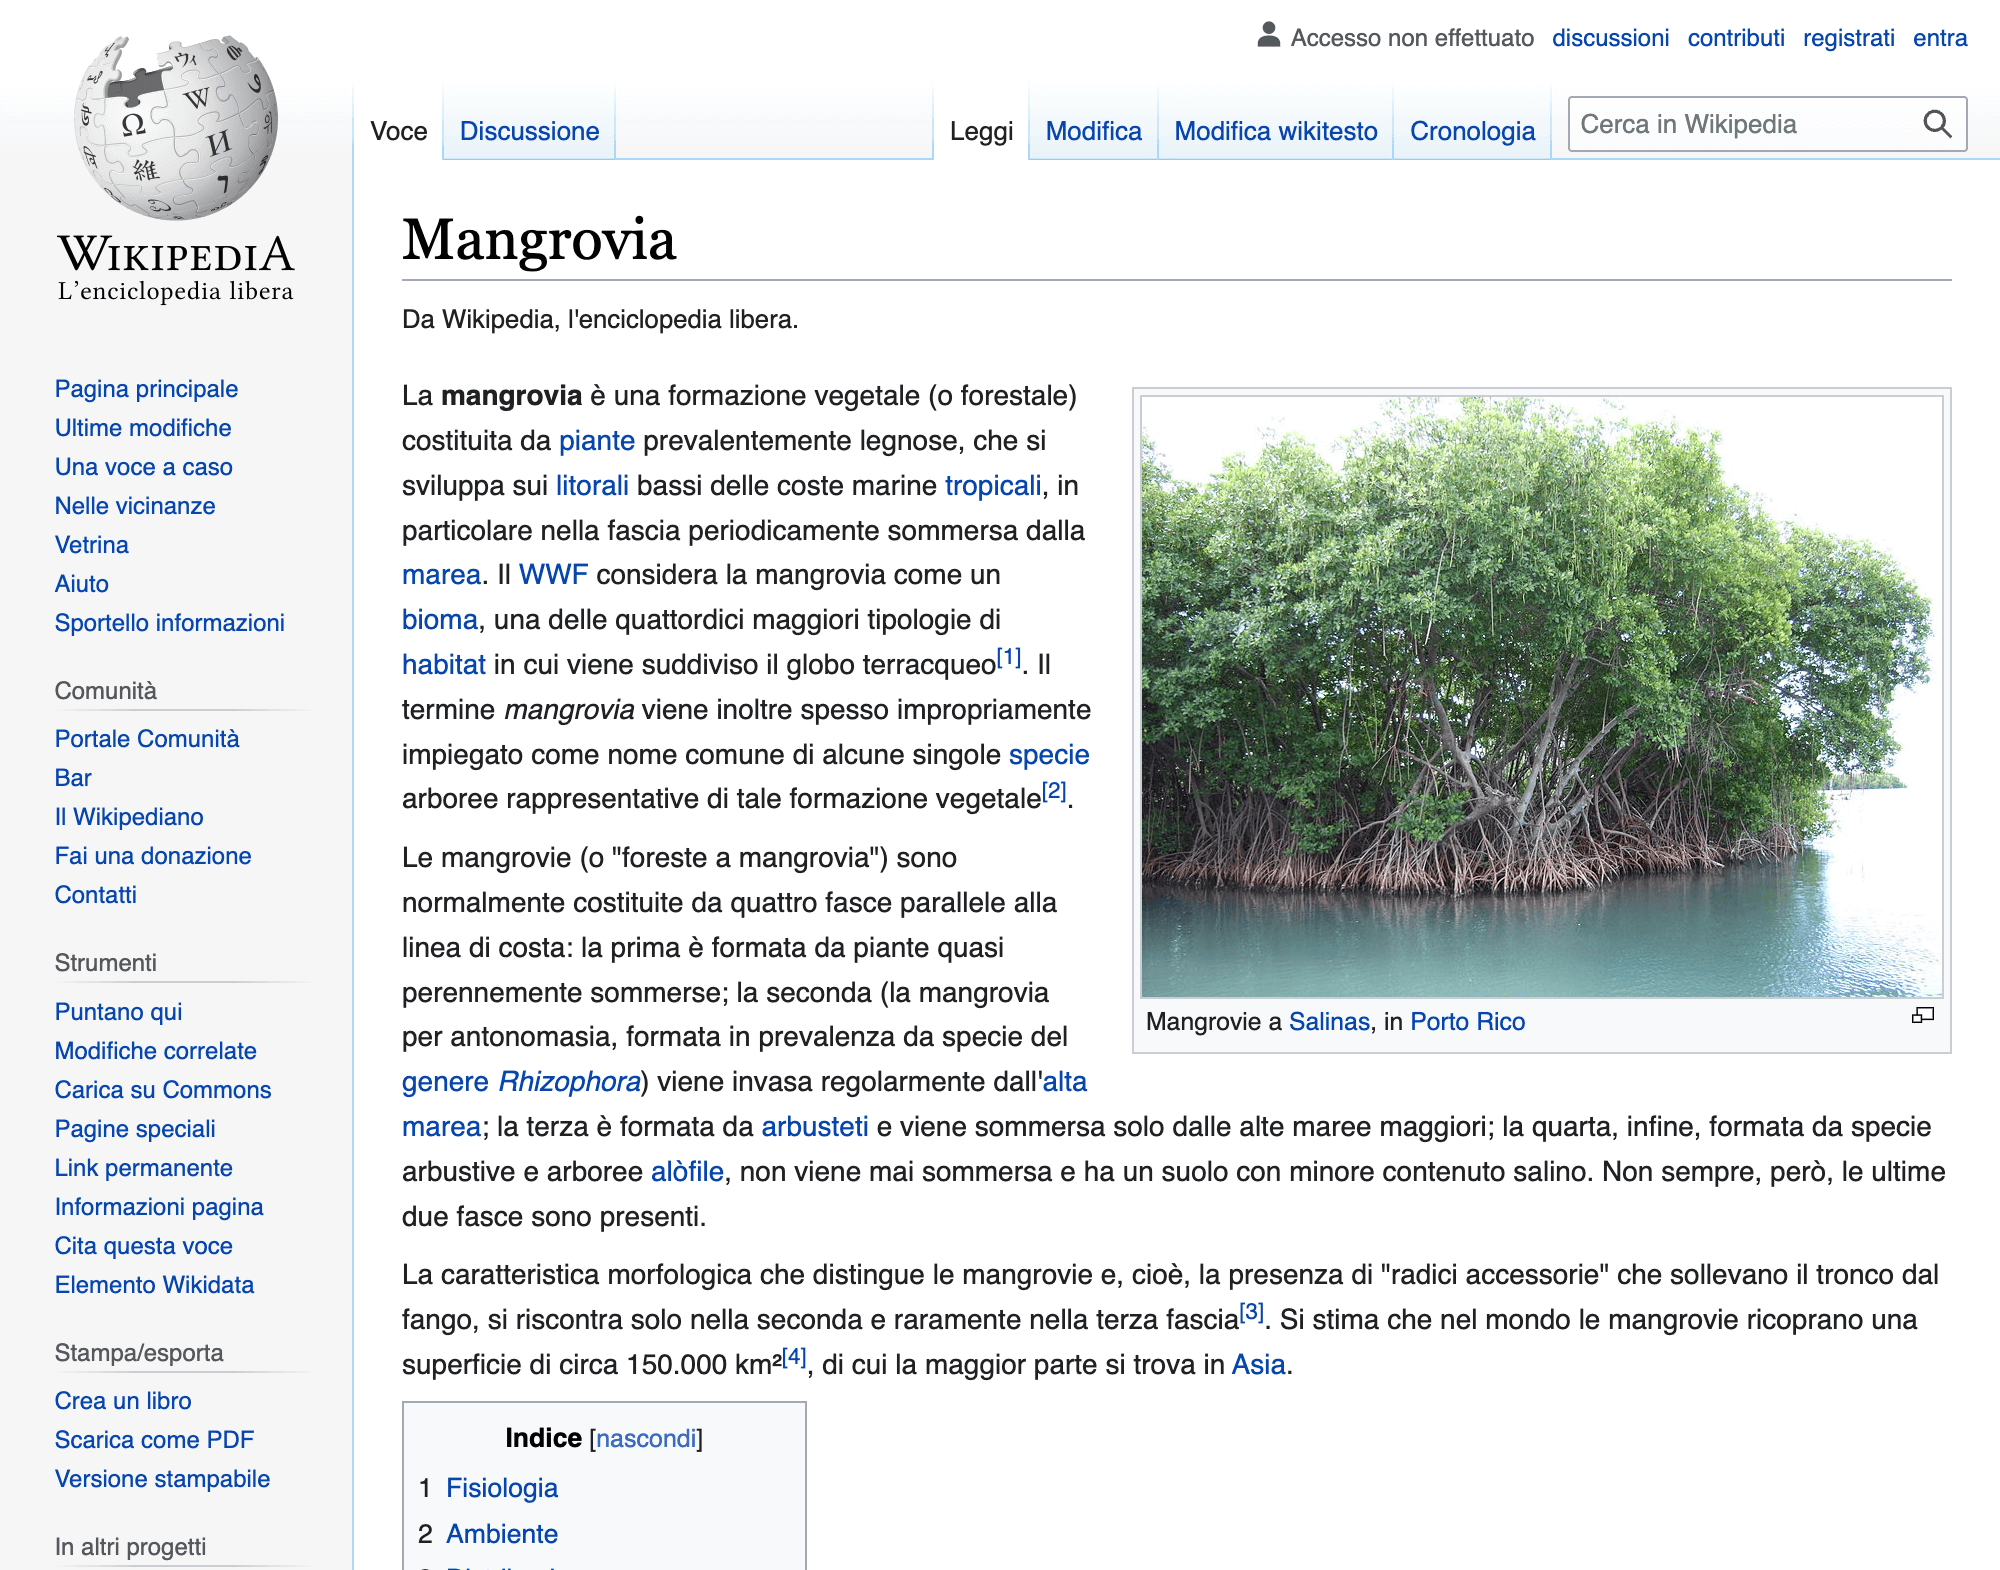 Mostra la pagina di Wikipedia per il termine "mangrovia"